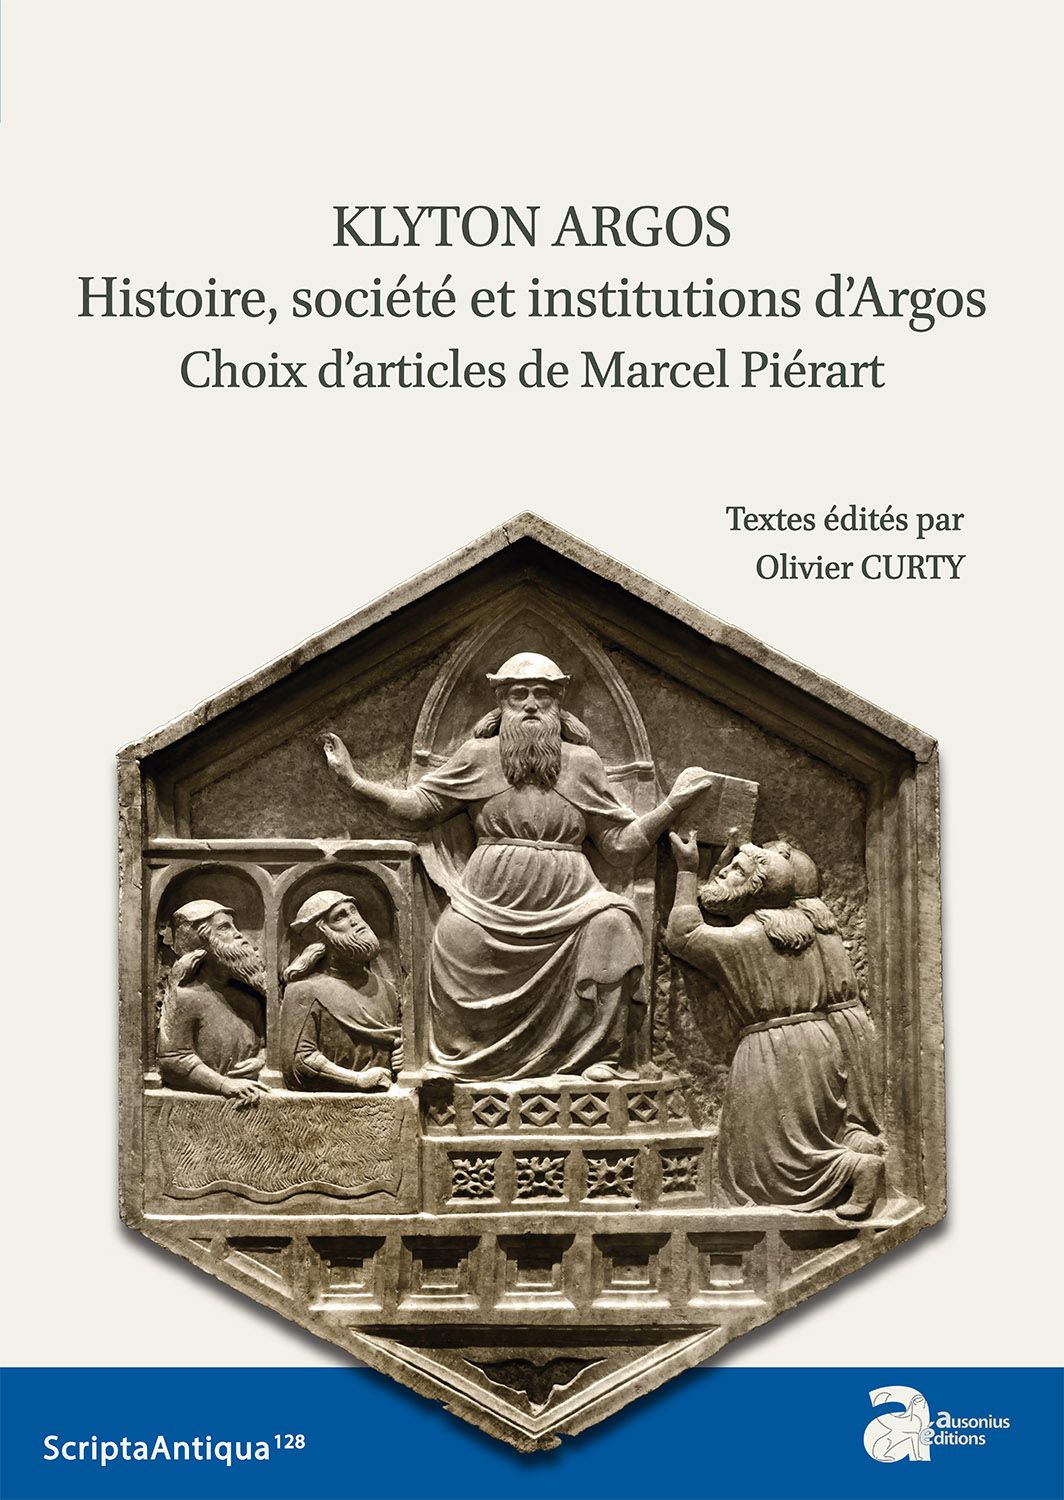 Klyton Argos. Histoire, société et institutions d'Argos. Choix d'articles de Marcel Piérart, (Scripta antiqua 128 ), 2020, 350 p.